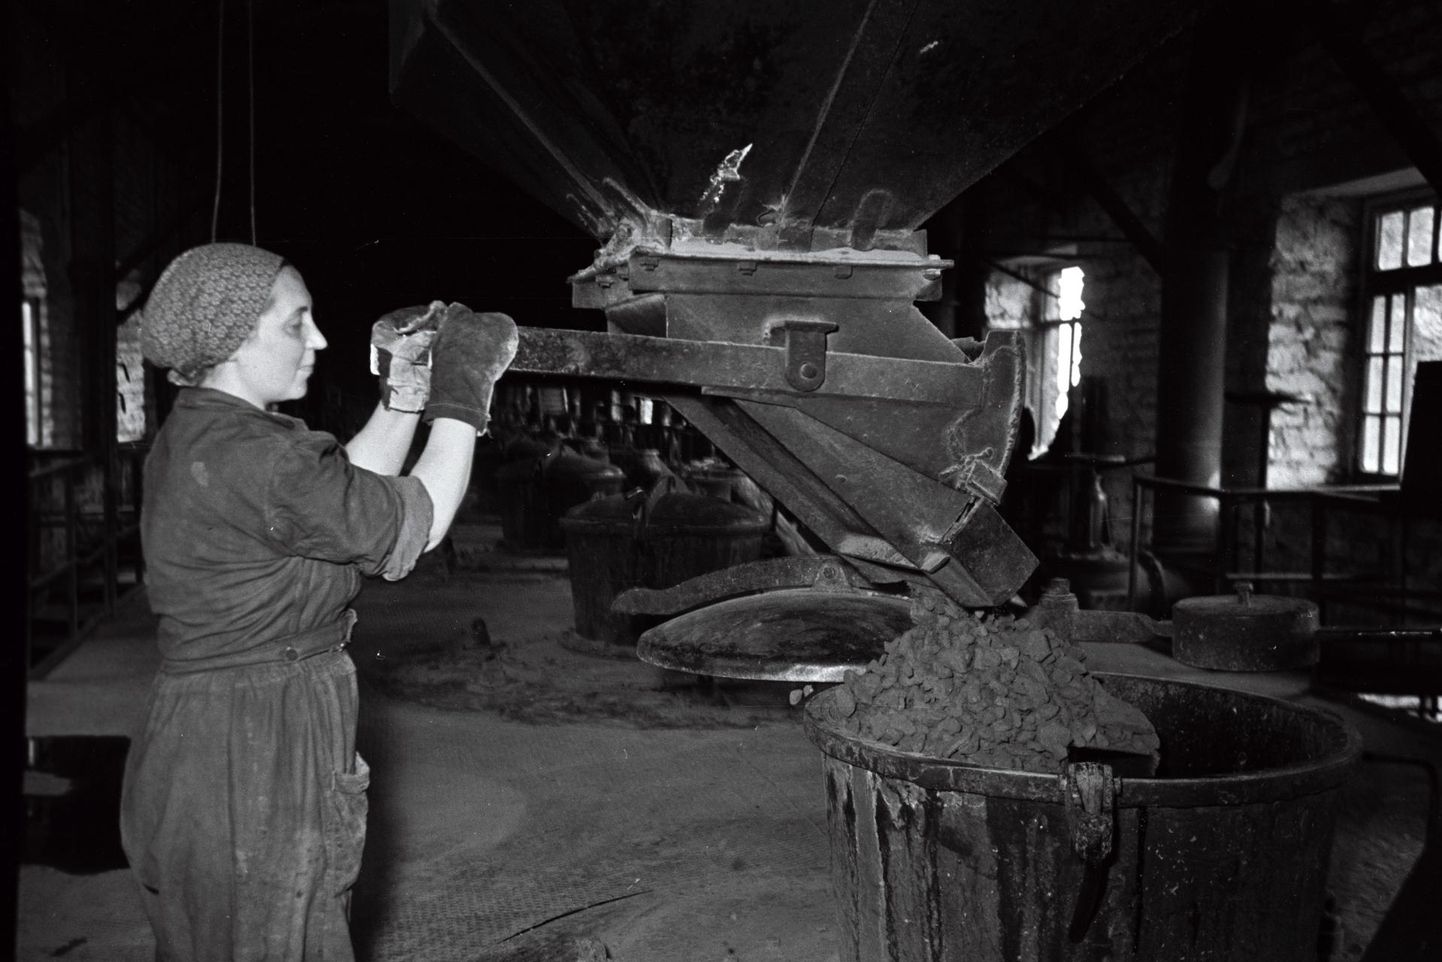 Töö Kohtla-Järve põlevkivitöötlemise kombinaadis oli raske ja tervist kahjustav, sellest hoolimata töötas seal palju naisi. 